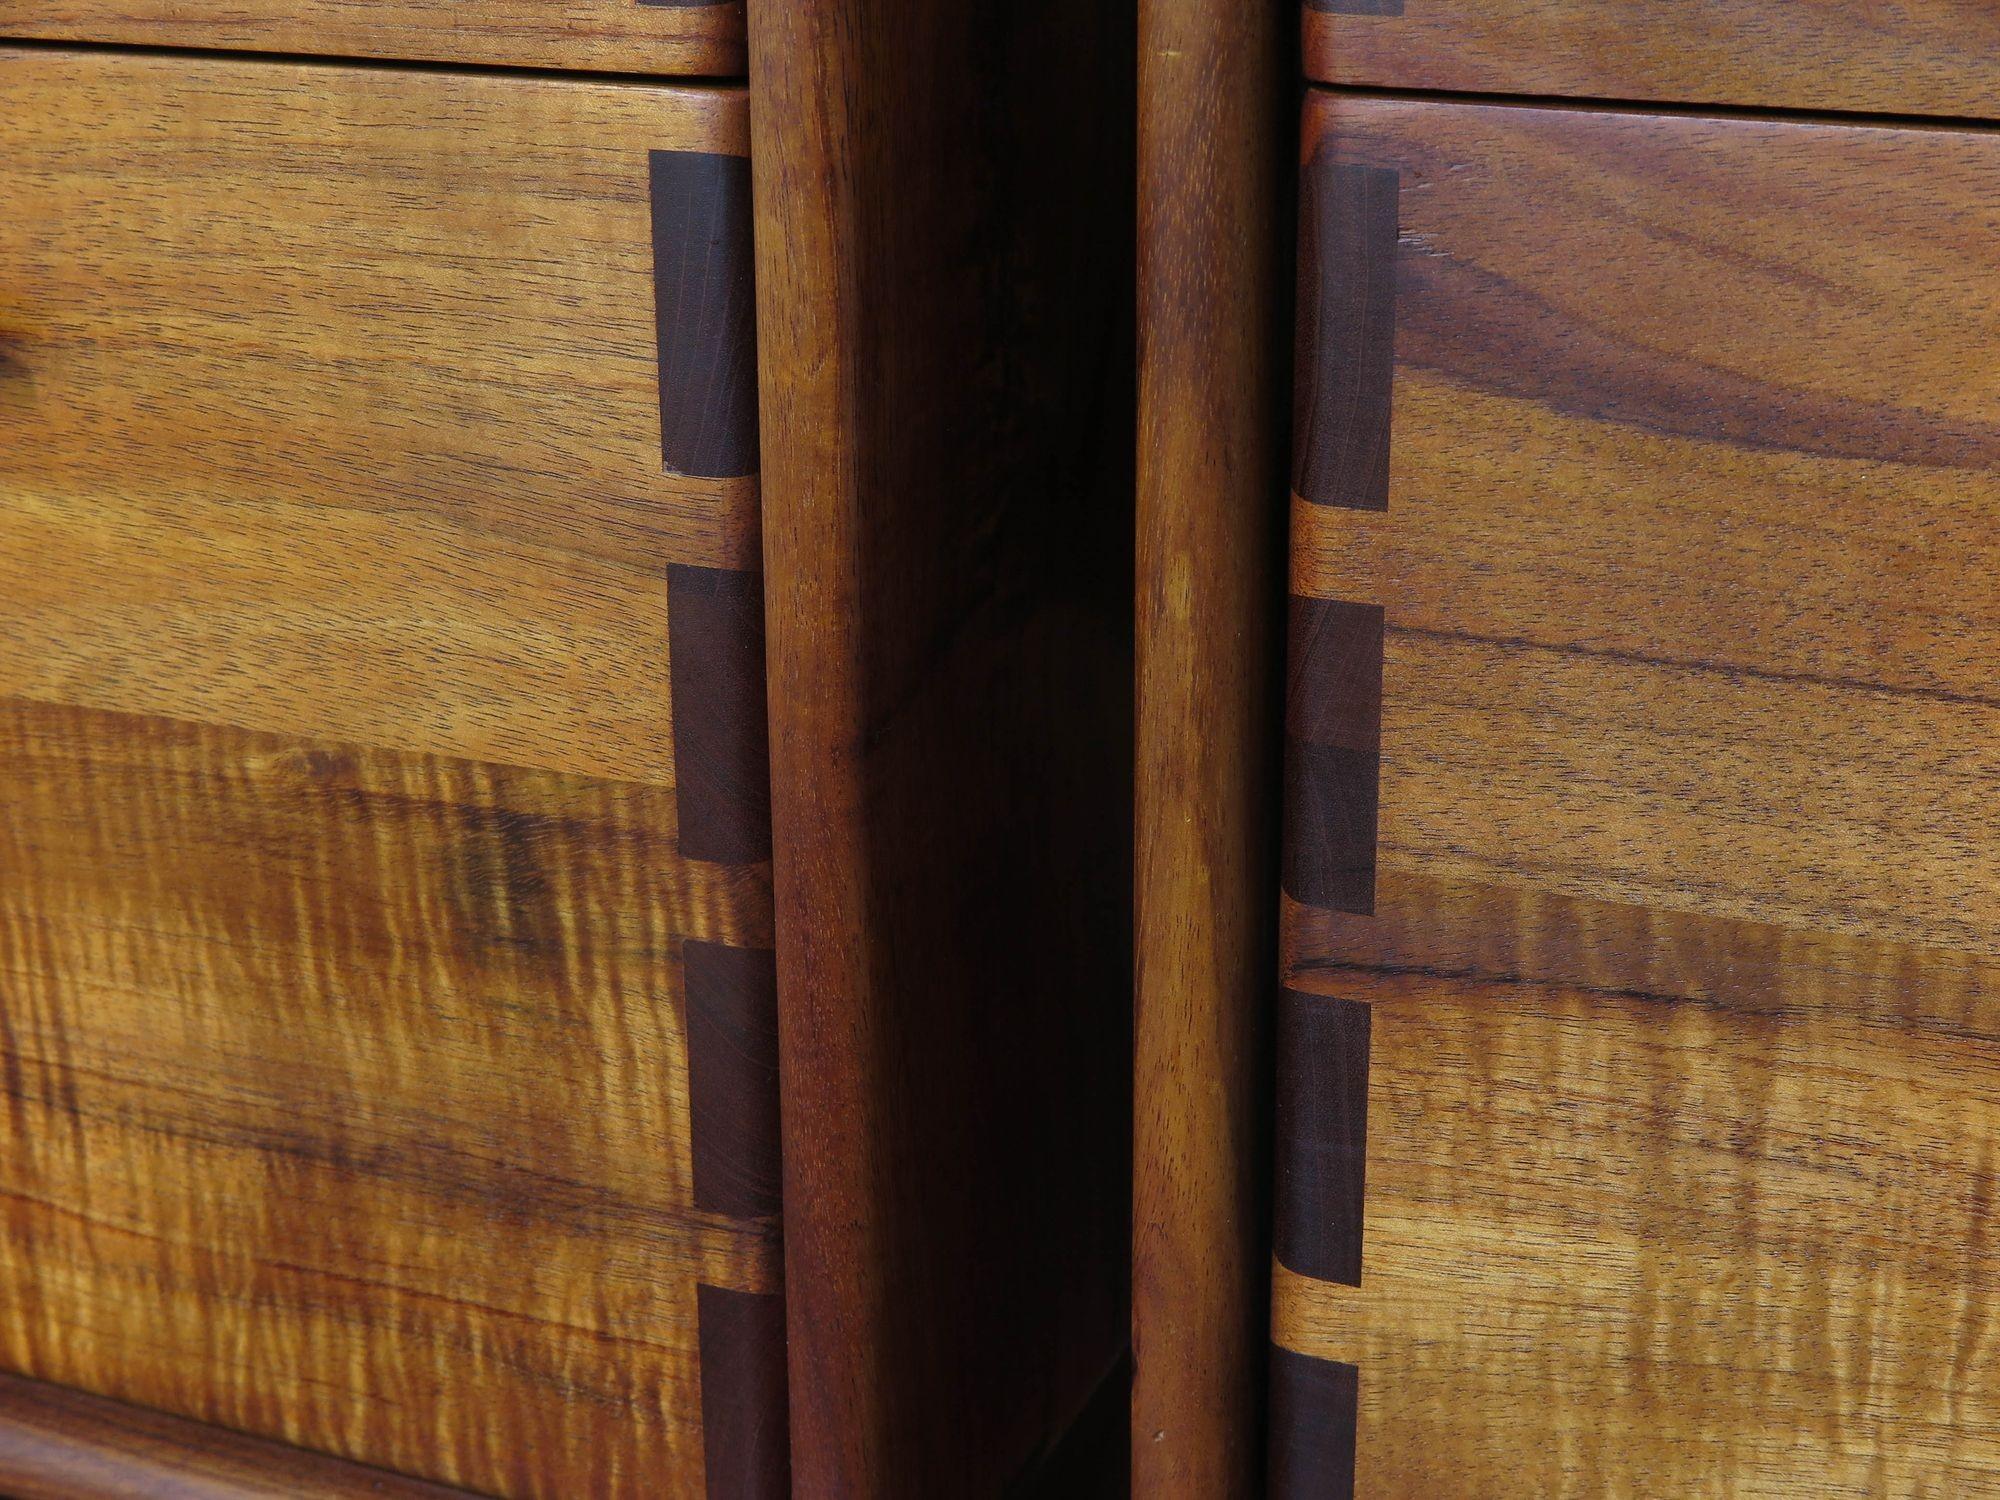 Ein Paar kalifornische Studio Craft Aktenschränke, entworfen von Jim Sweeney, Berkeley, ca. 1983. Die Schränke sind aus massivem Koa-Holz handgefertigt und verfügen jeweils über zwei Schubladen mit freiliegenden Tischlerarbeiten am Schrank und